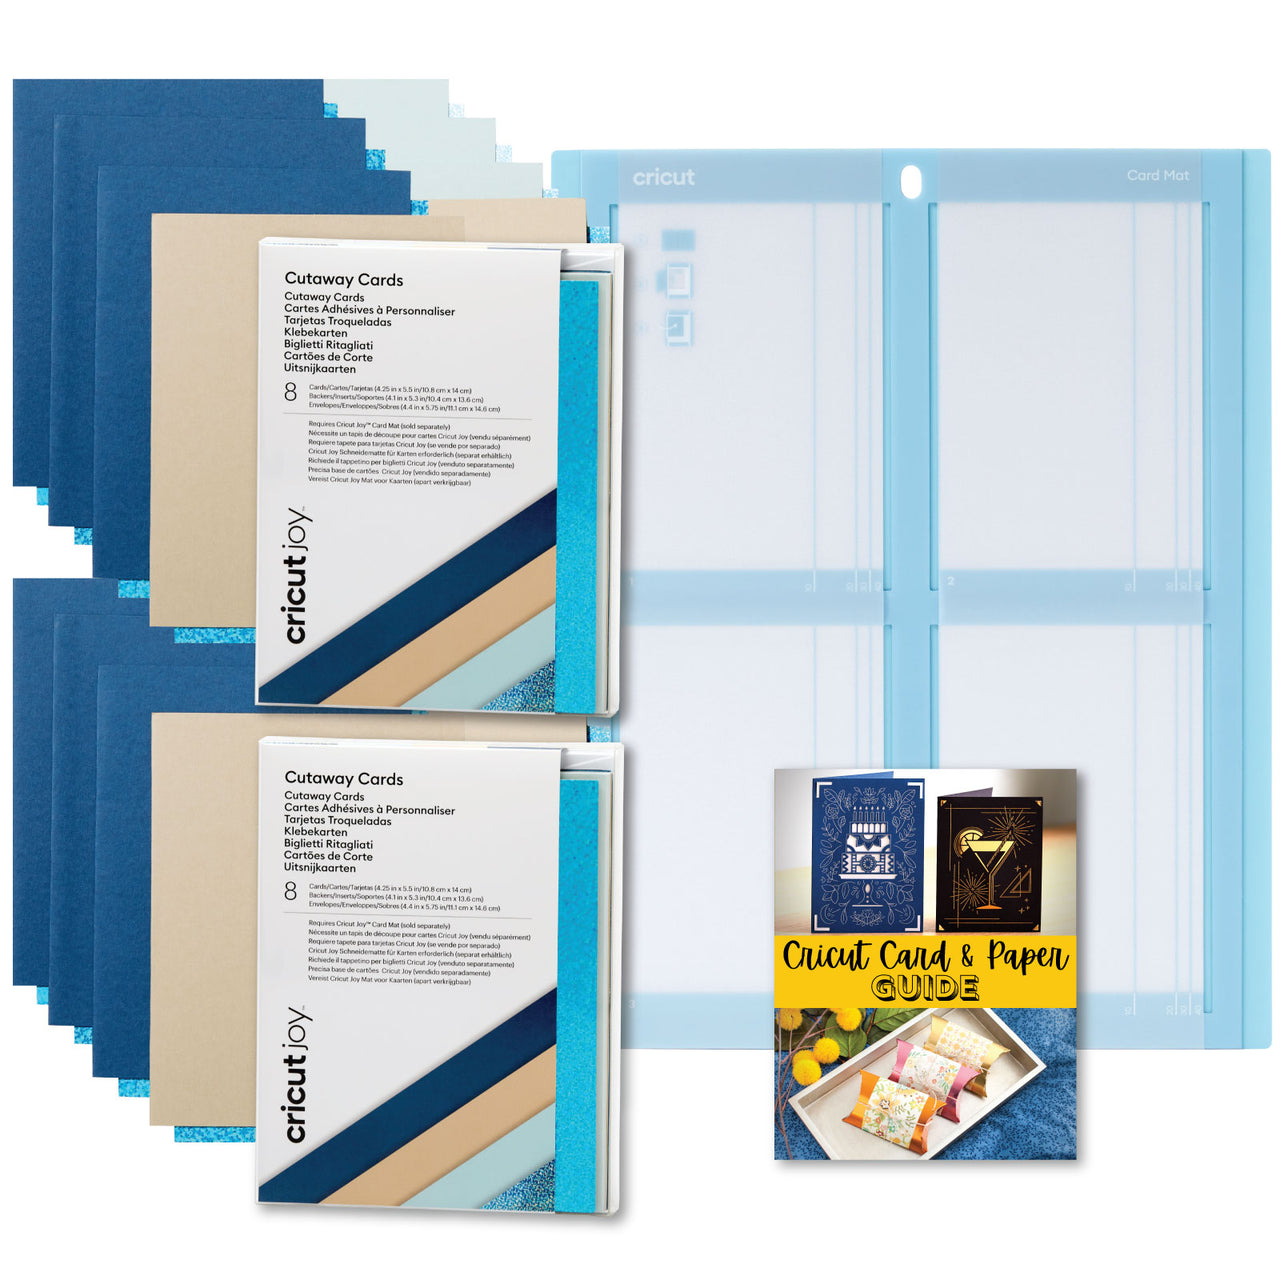 Cricut Cutaway Cards Marina Sampler Double Pack with Cricut Card Mat 2x2 Bundle